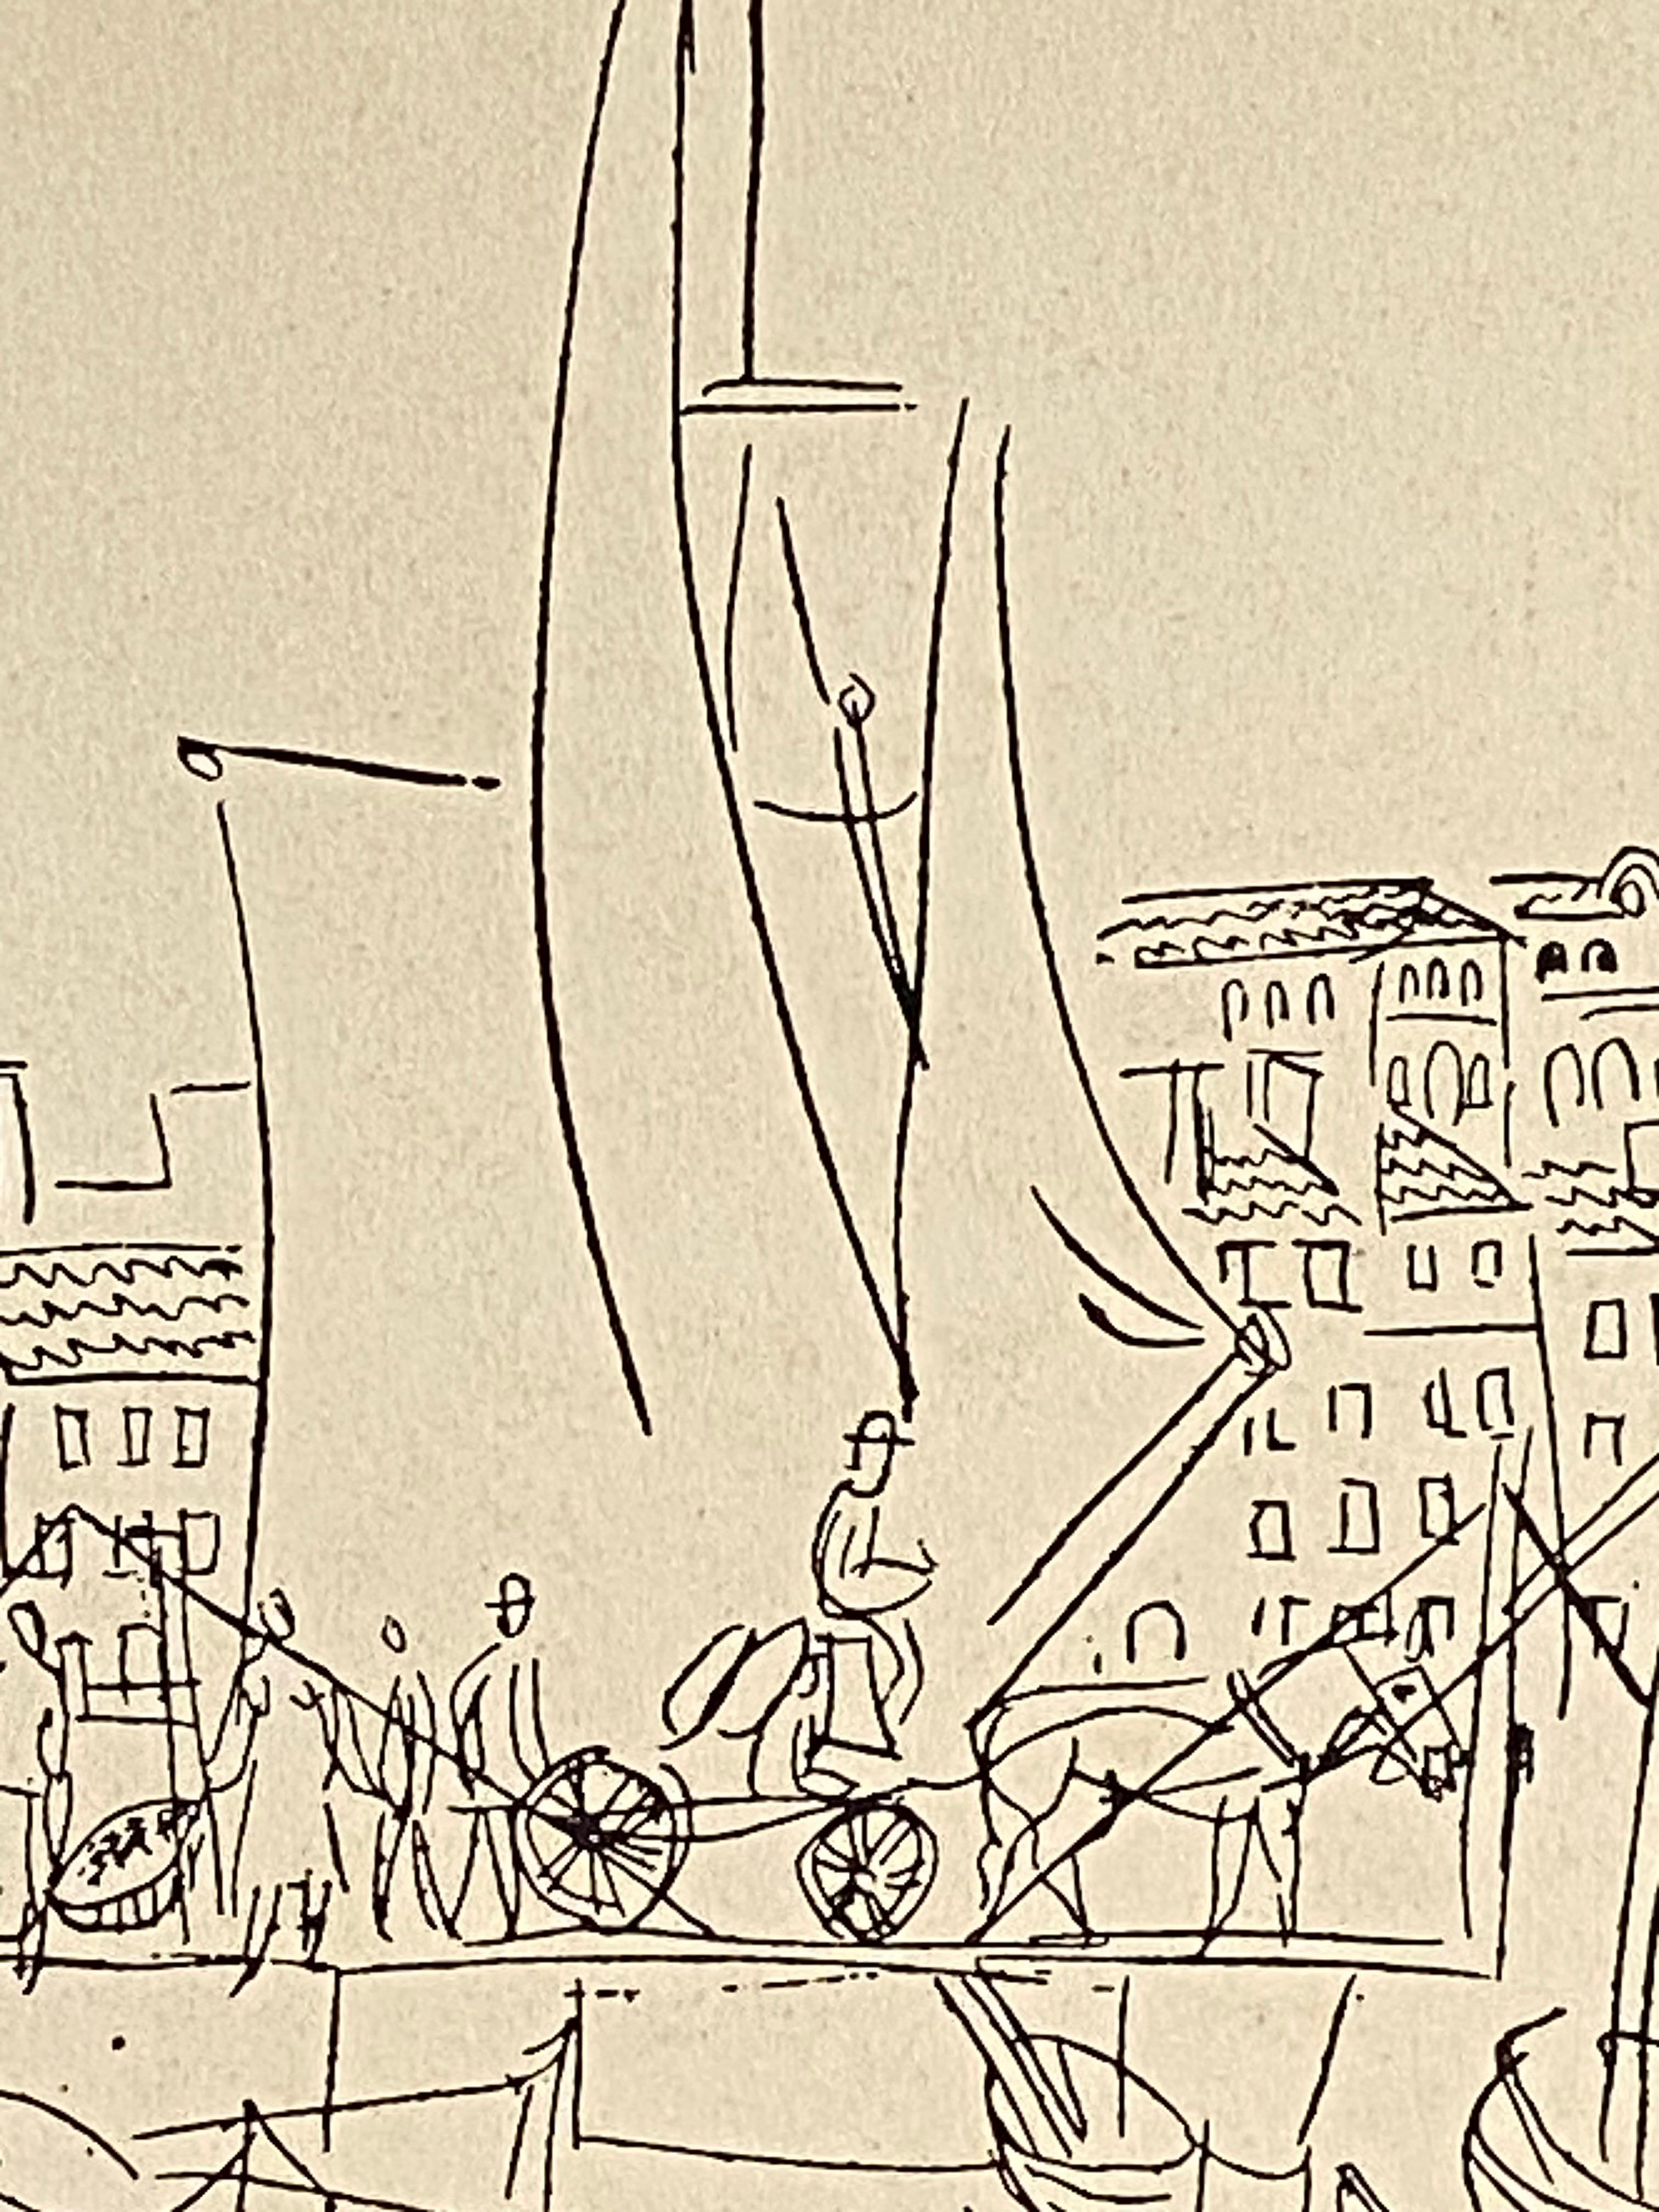 Originaler lithografischer Druck in Form eines Tiefdrucks mit schwarzer Tinte, der der Hand des bekannten französischen Künstlers Jean Dufy zugeschrieben wird.  In der Platte signiert  